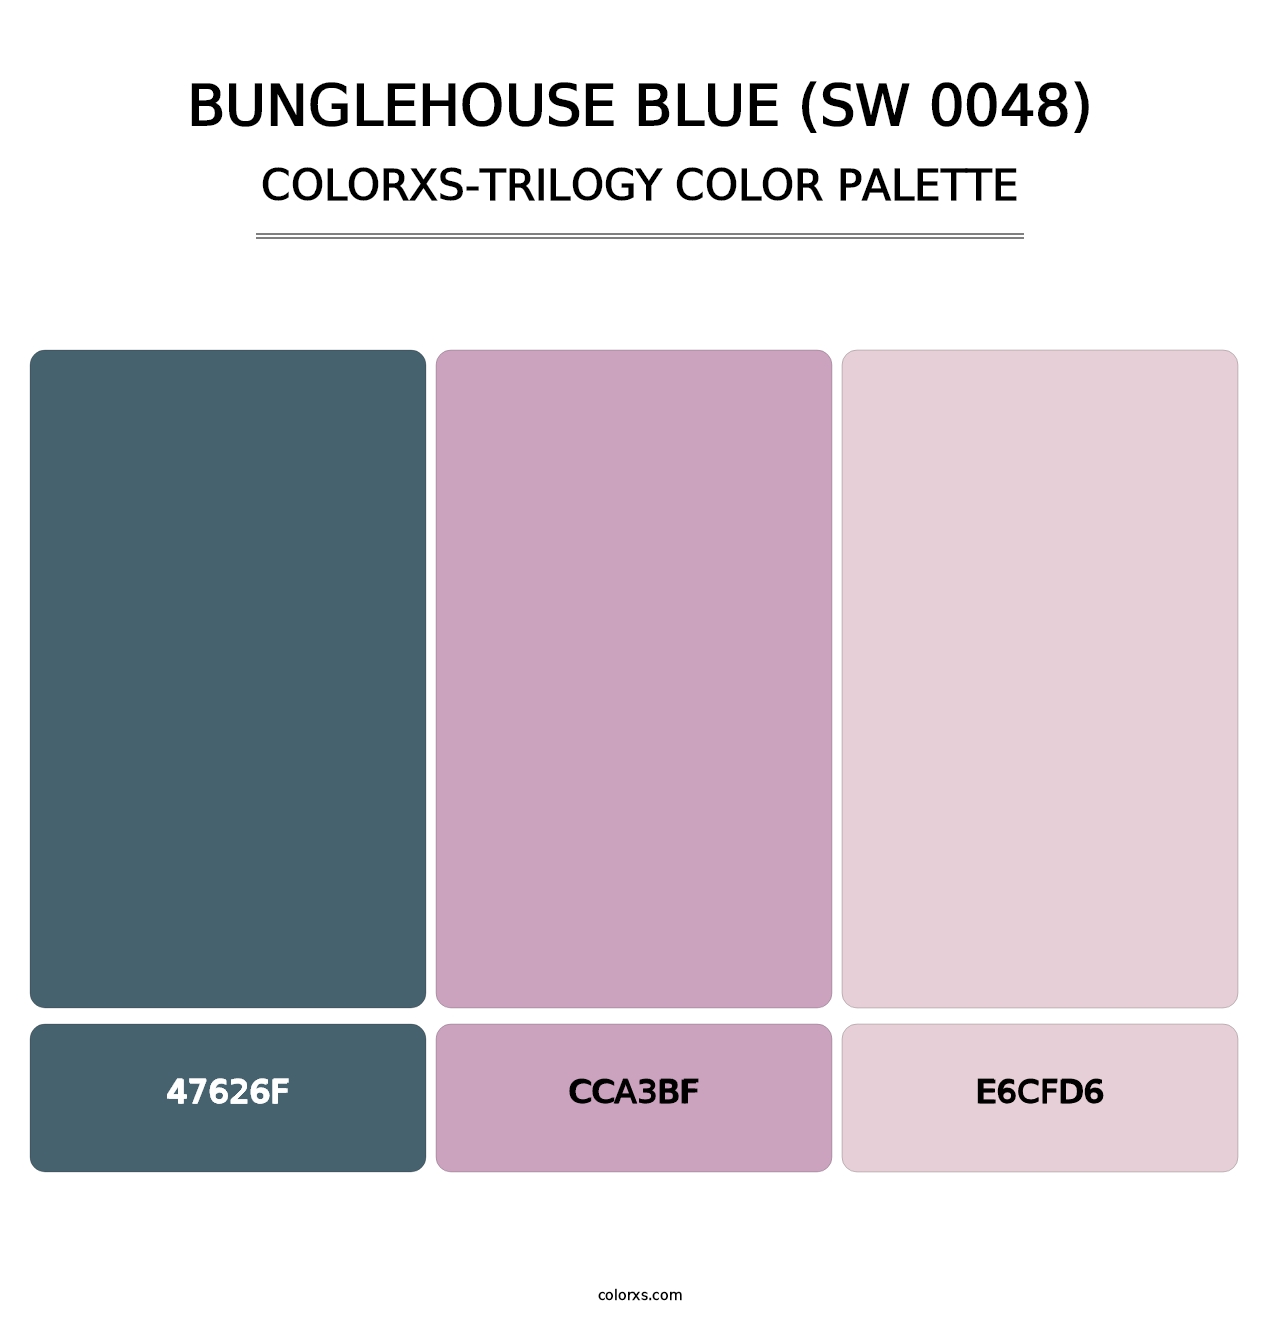 Bunglehouse Blue (SW 0048) - Colorxs Trilogy Palette